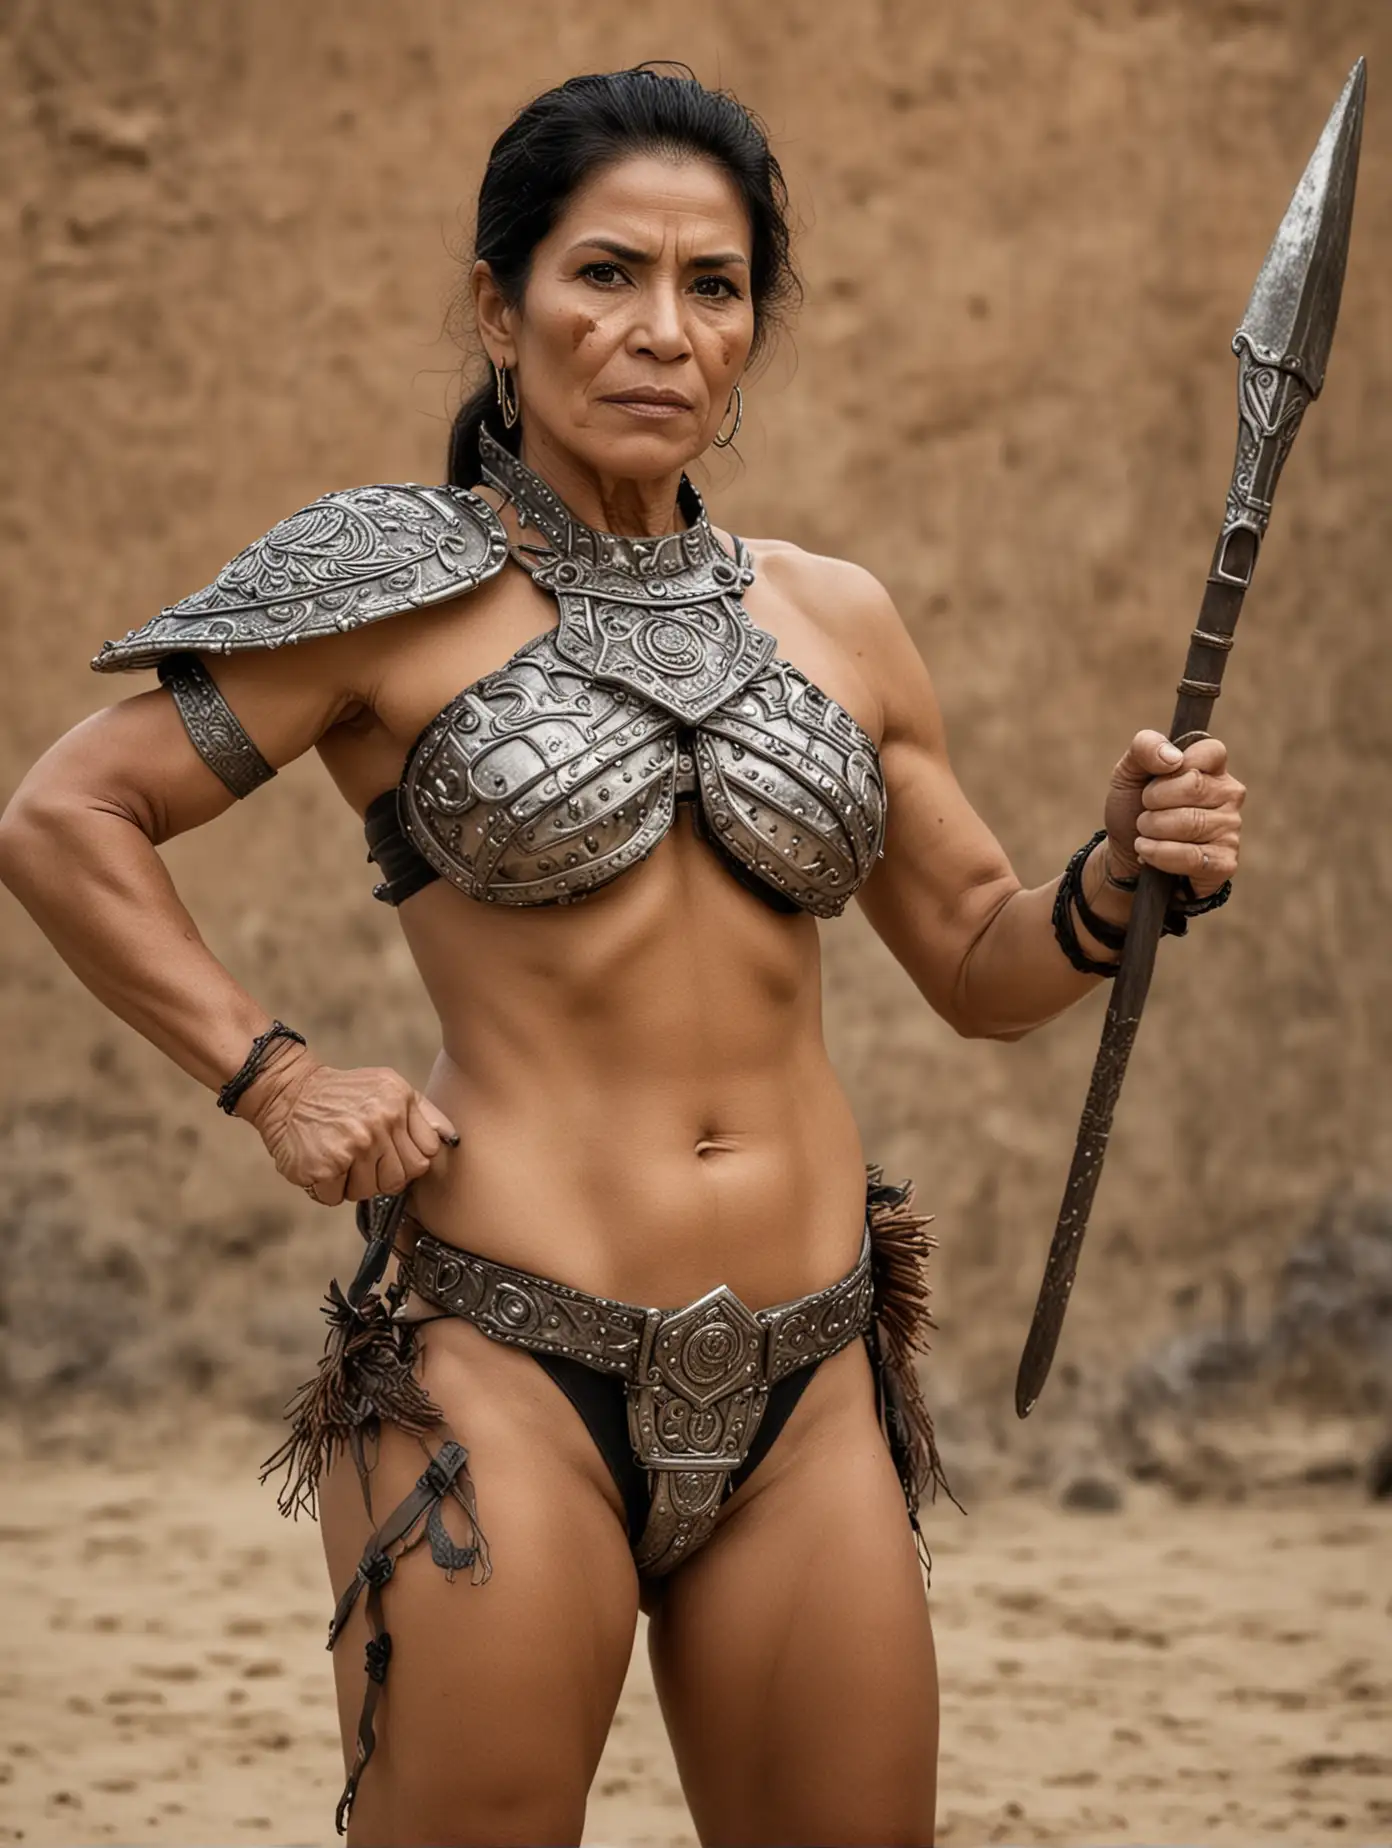 Muscular-Mexican-Woman-in-Bikini-Armor-Wielding-Spear